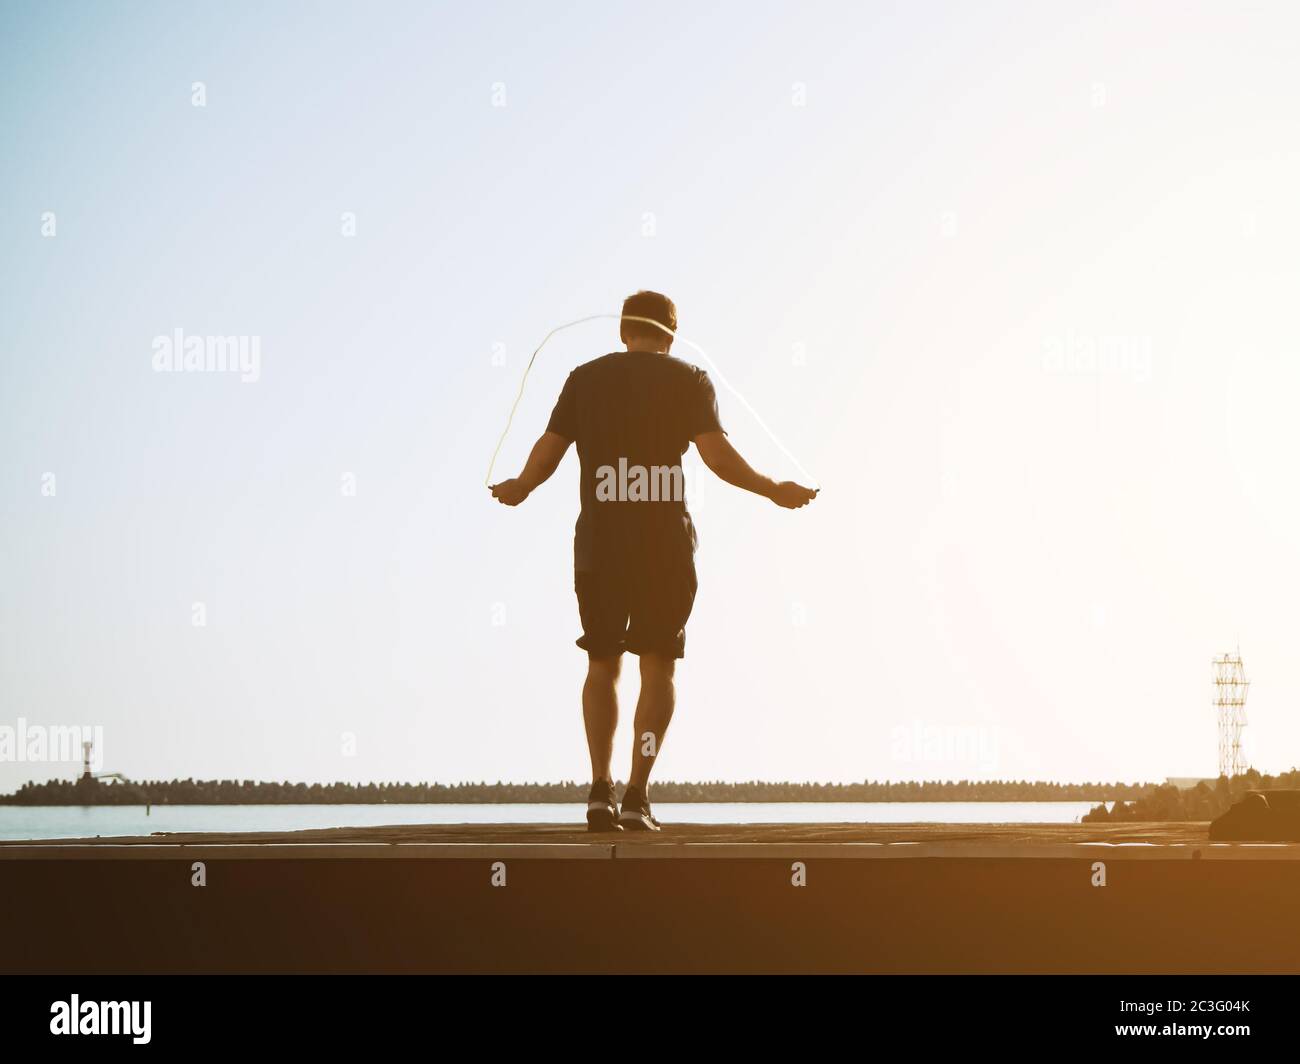 Giovane ragazzo in shorts salta su una corda in una giornata di sole sul cielo retroghiero. Effetto artistico. Immagine sfocata Foto Stock